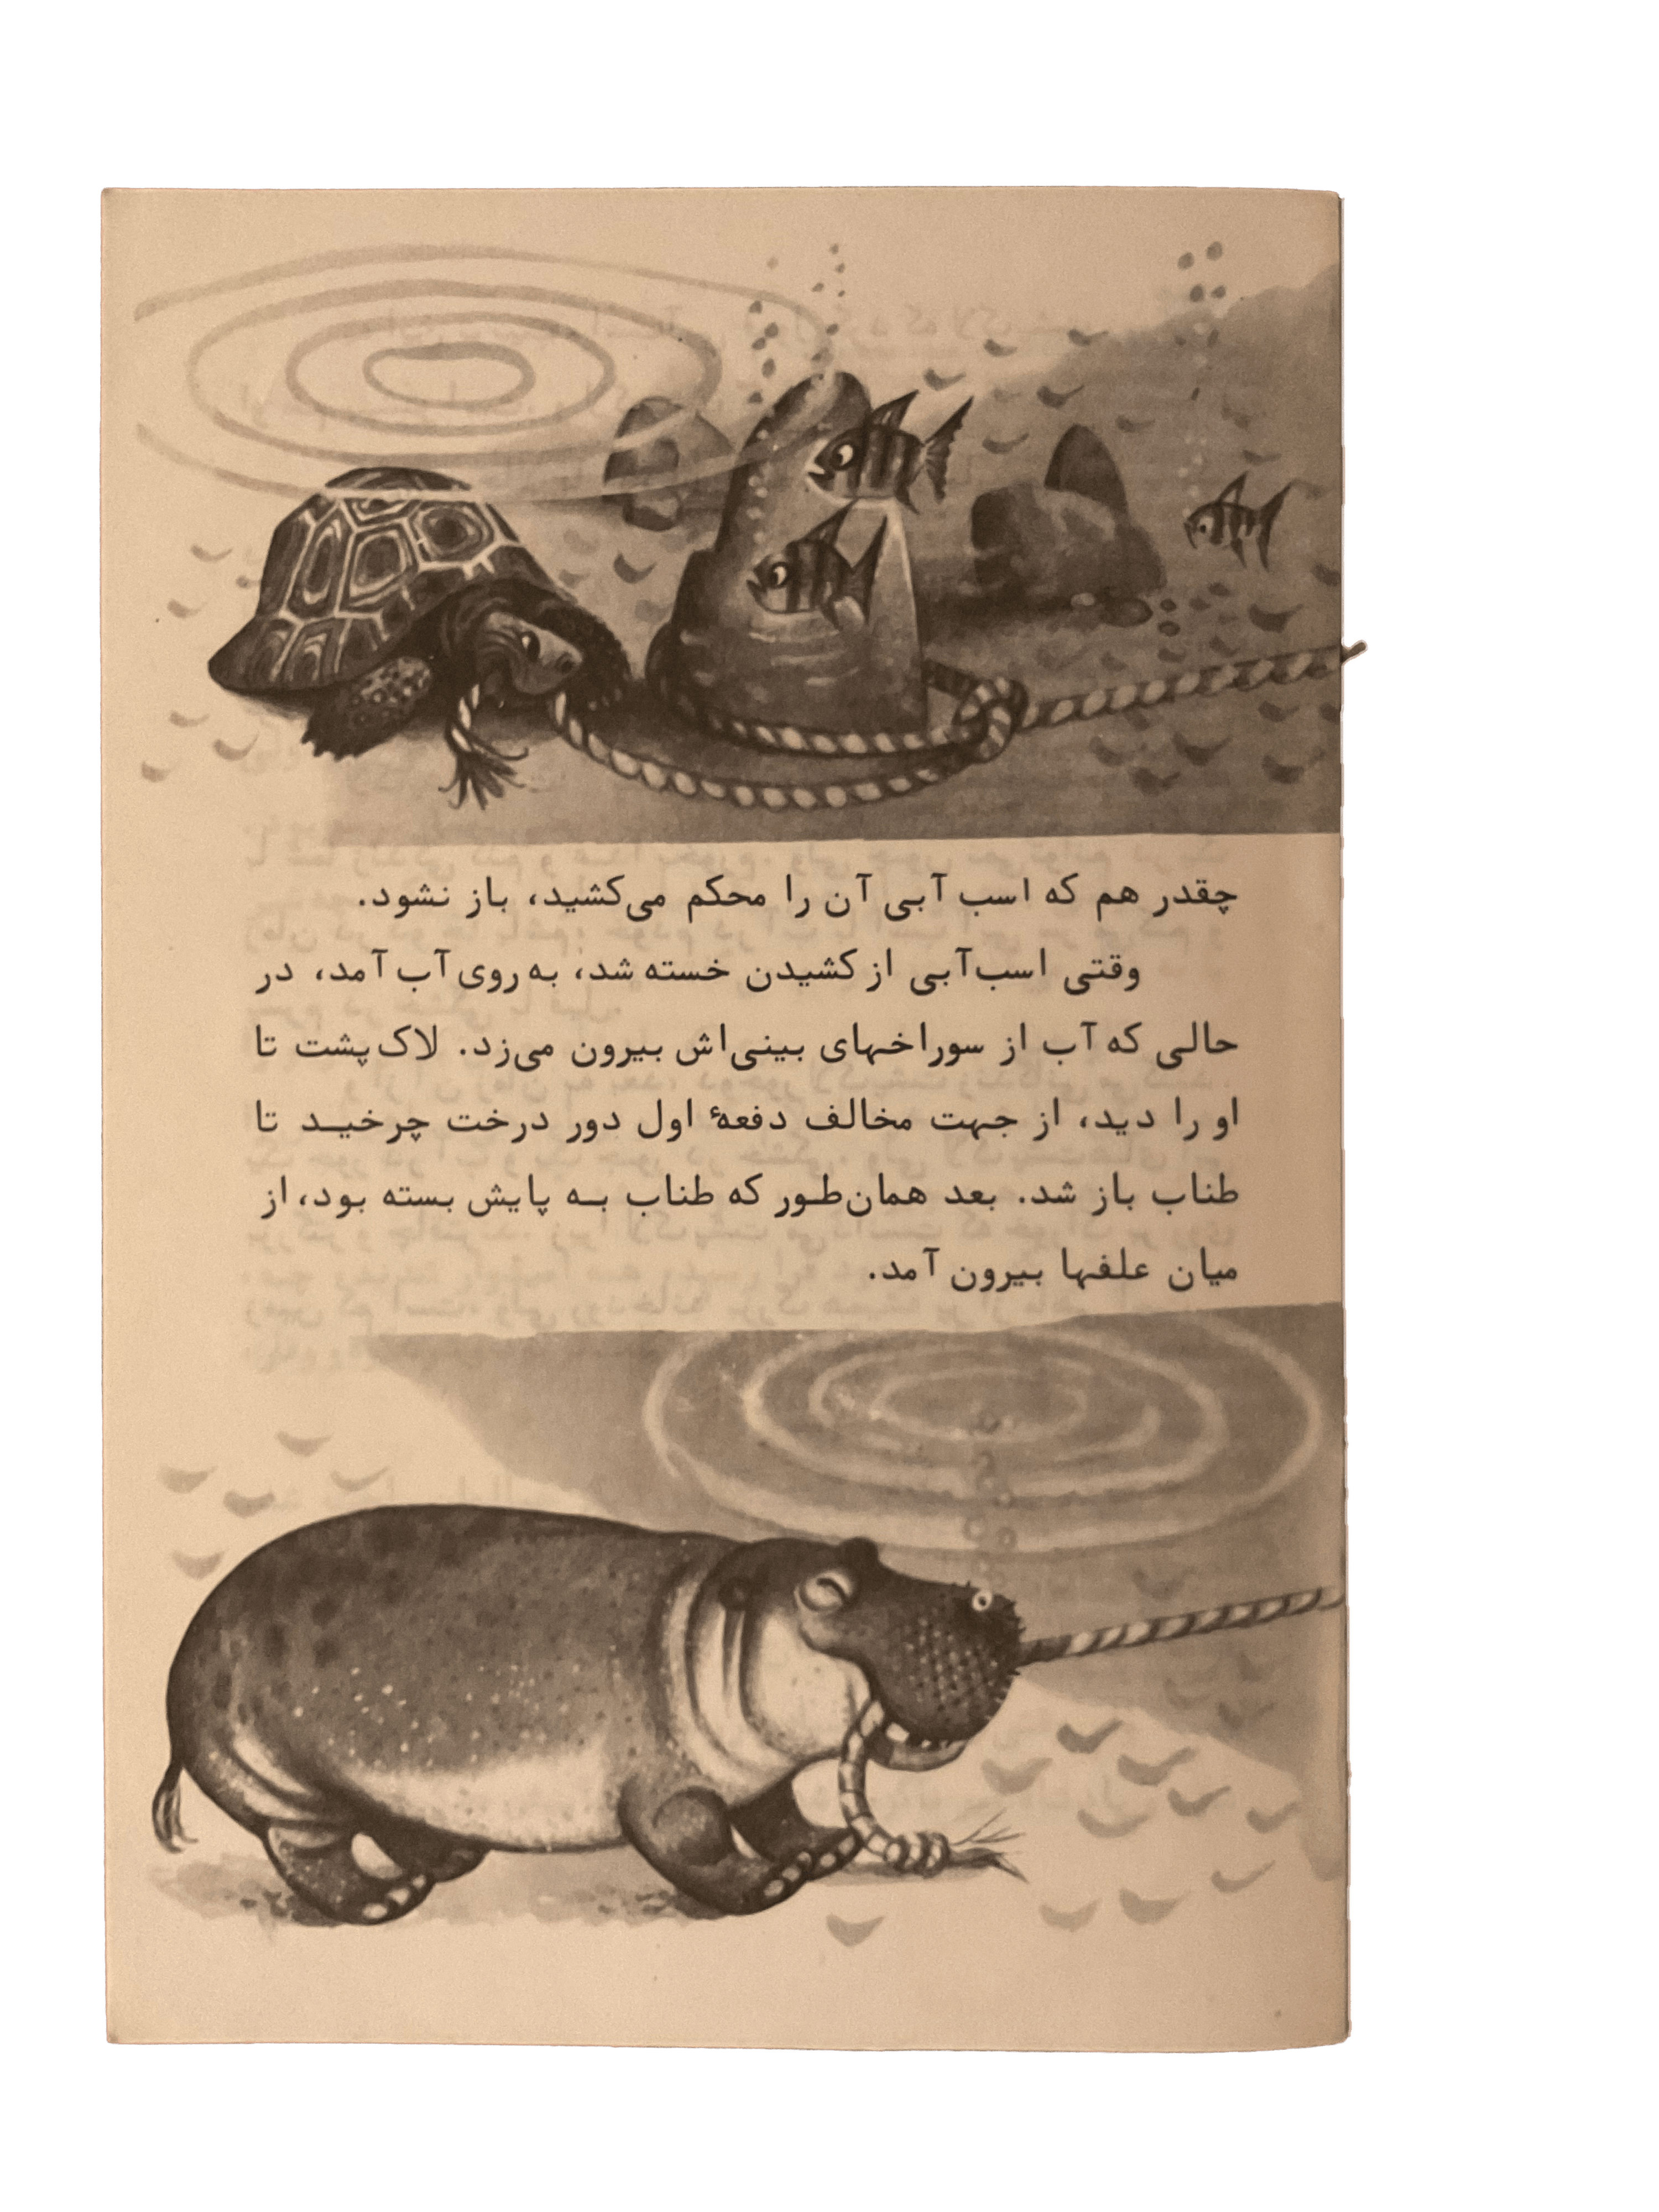 Timid (Farsi) - KHAJISTAN™